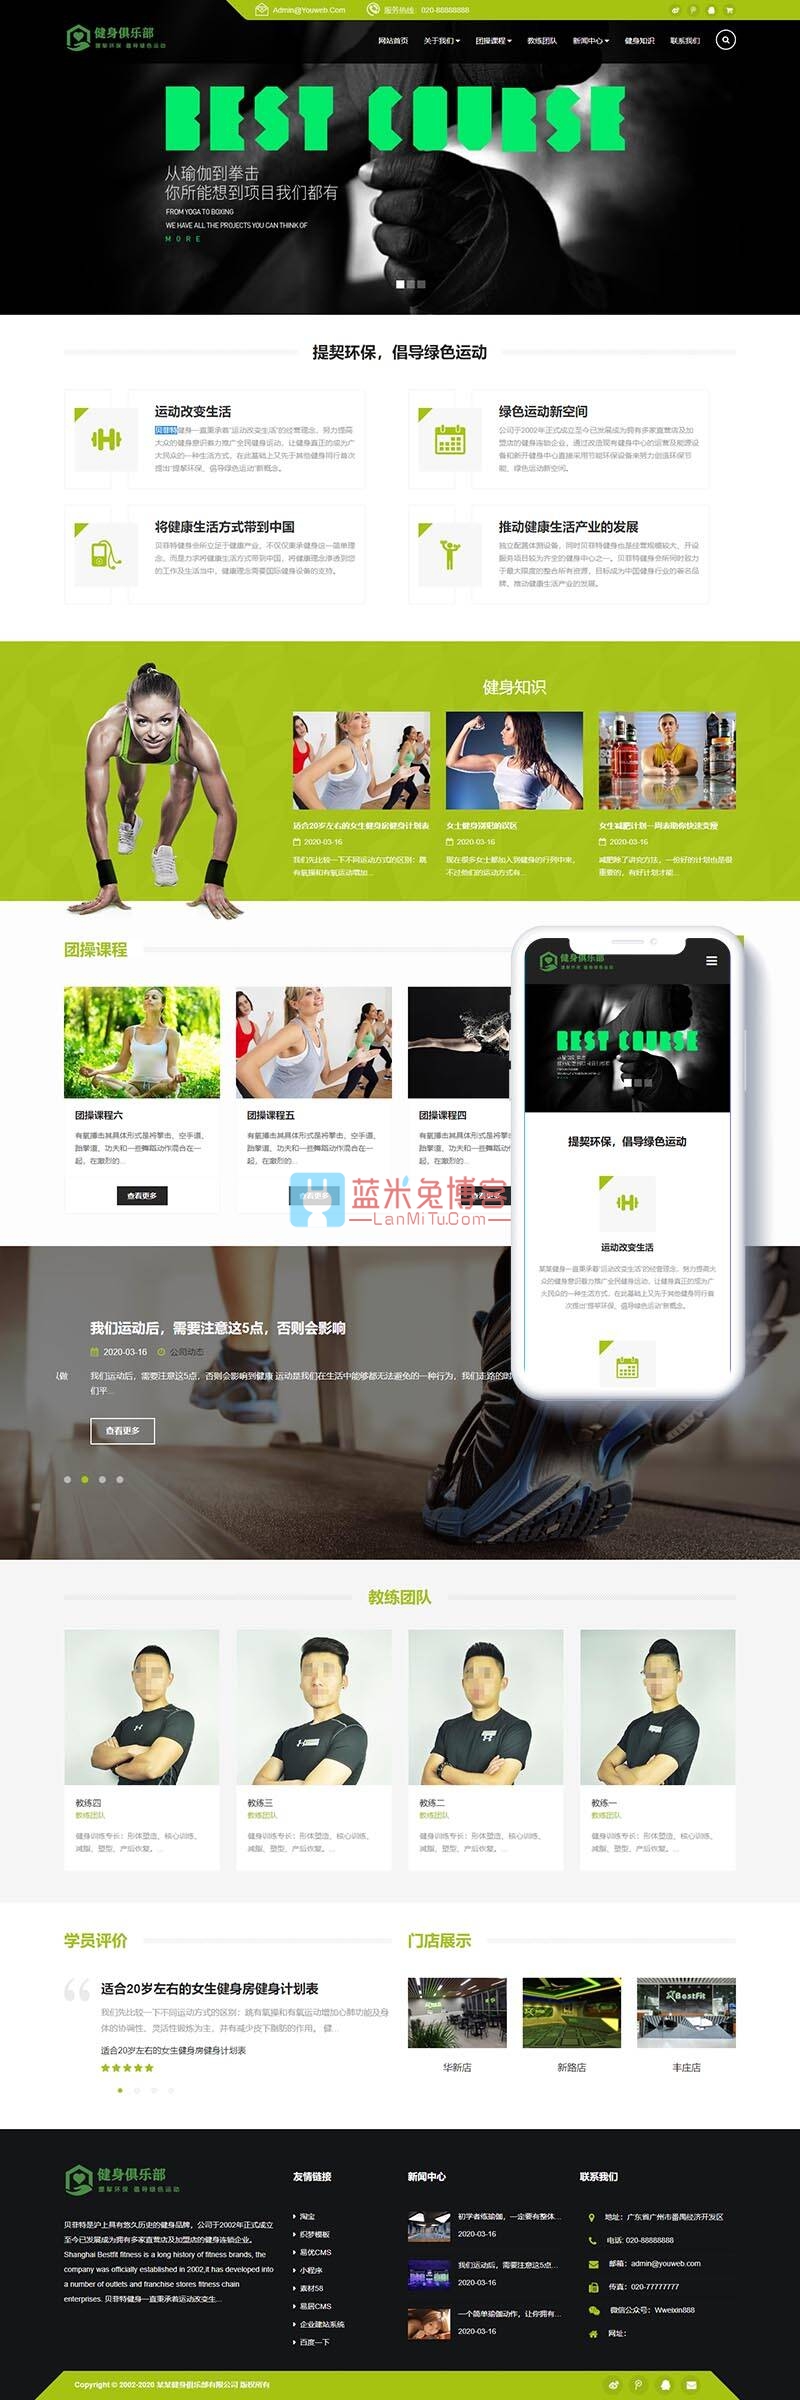 织梦dedecms模板 响应式健身俱乐部类网站织梦模板(自适应手机端)-蓝米兔博客